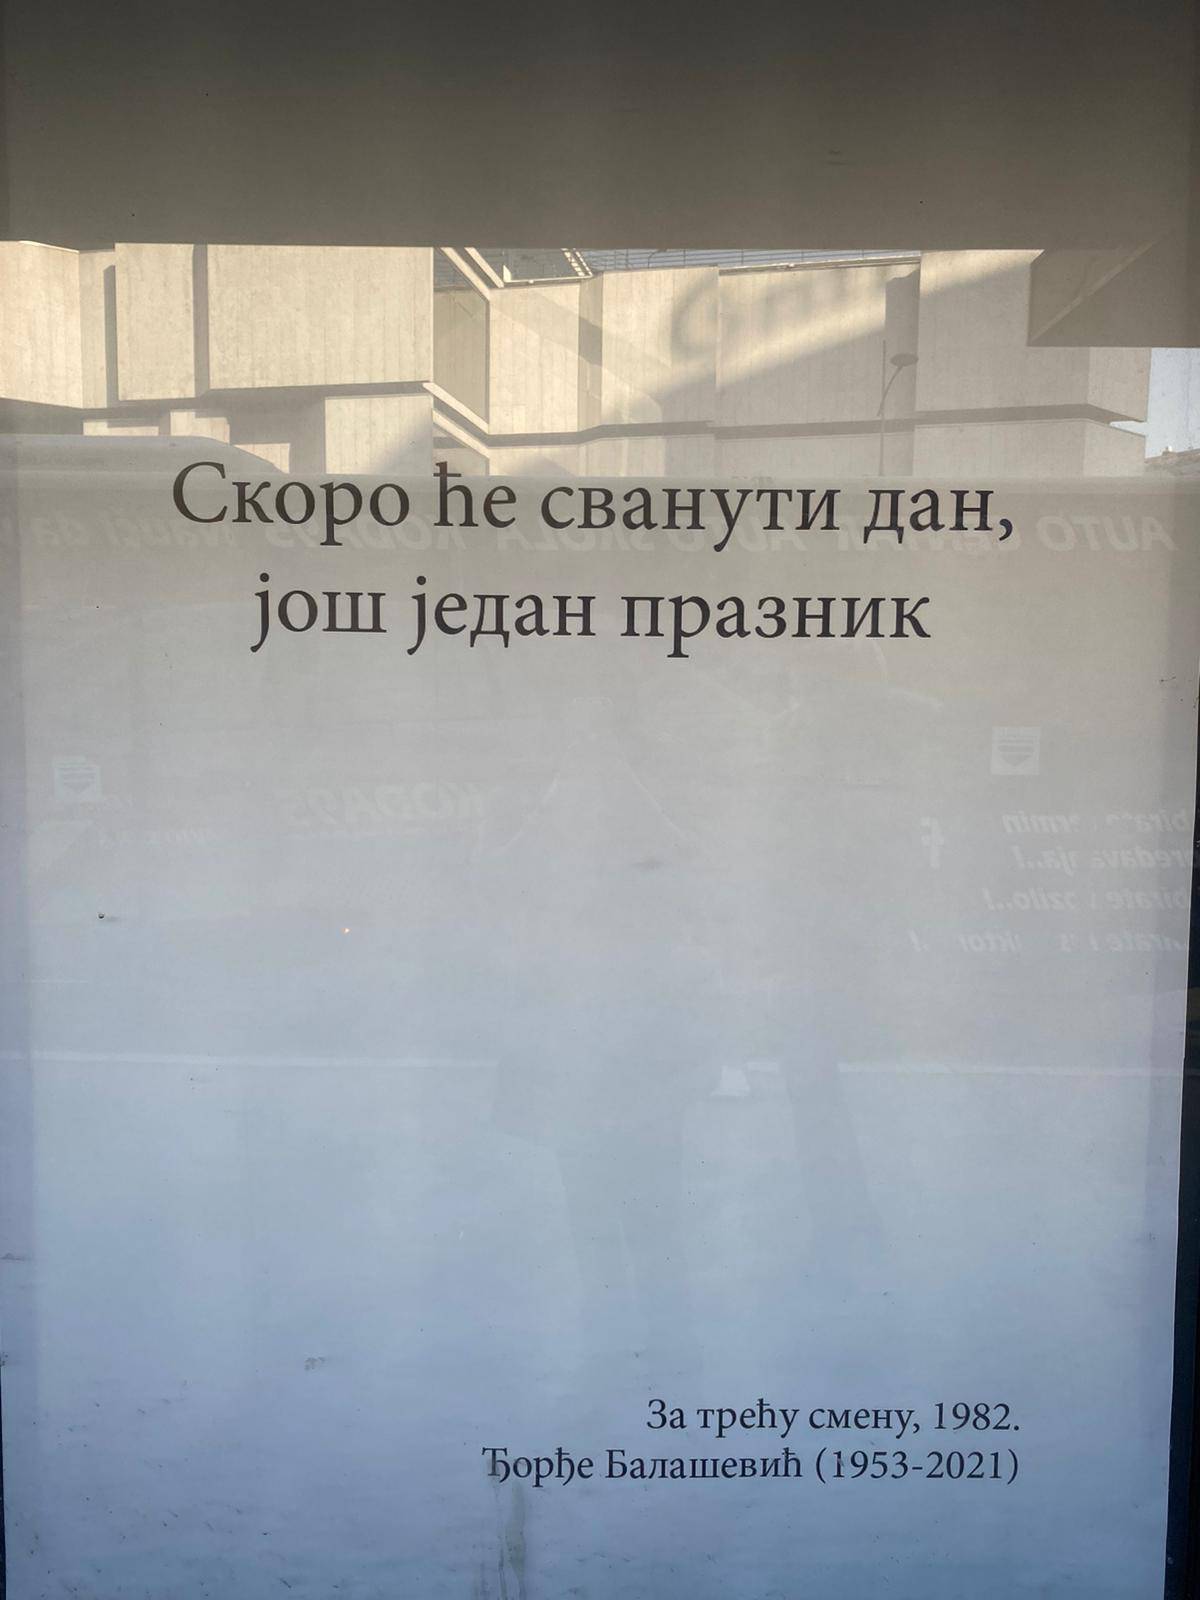 U Novom Sadu osvanuli plakati na autobusnim stanicama s Balaševićevim stihovima...